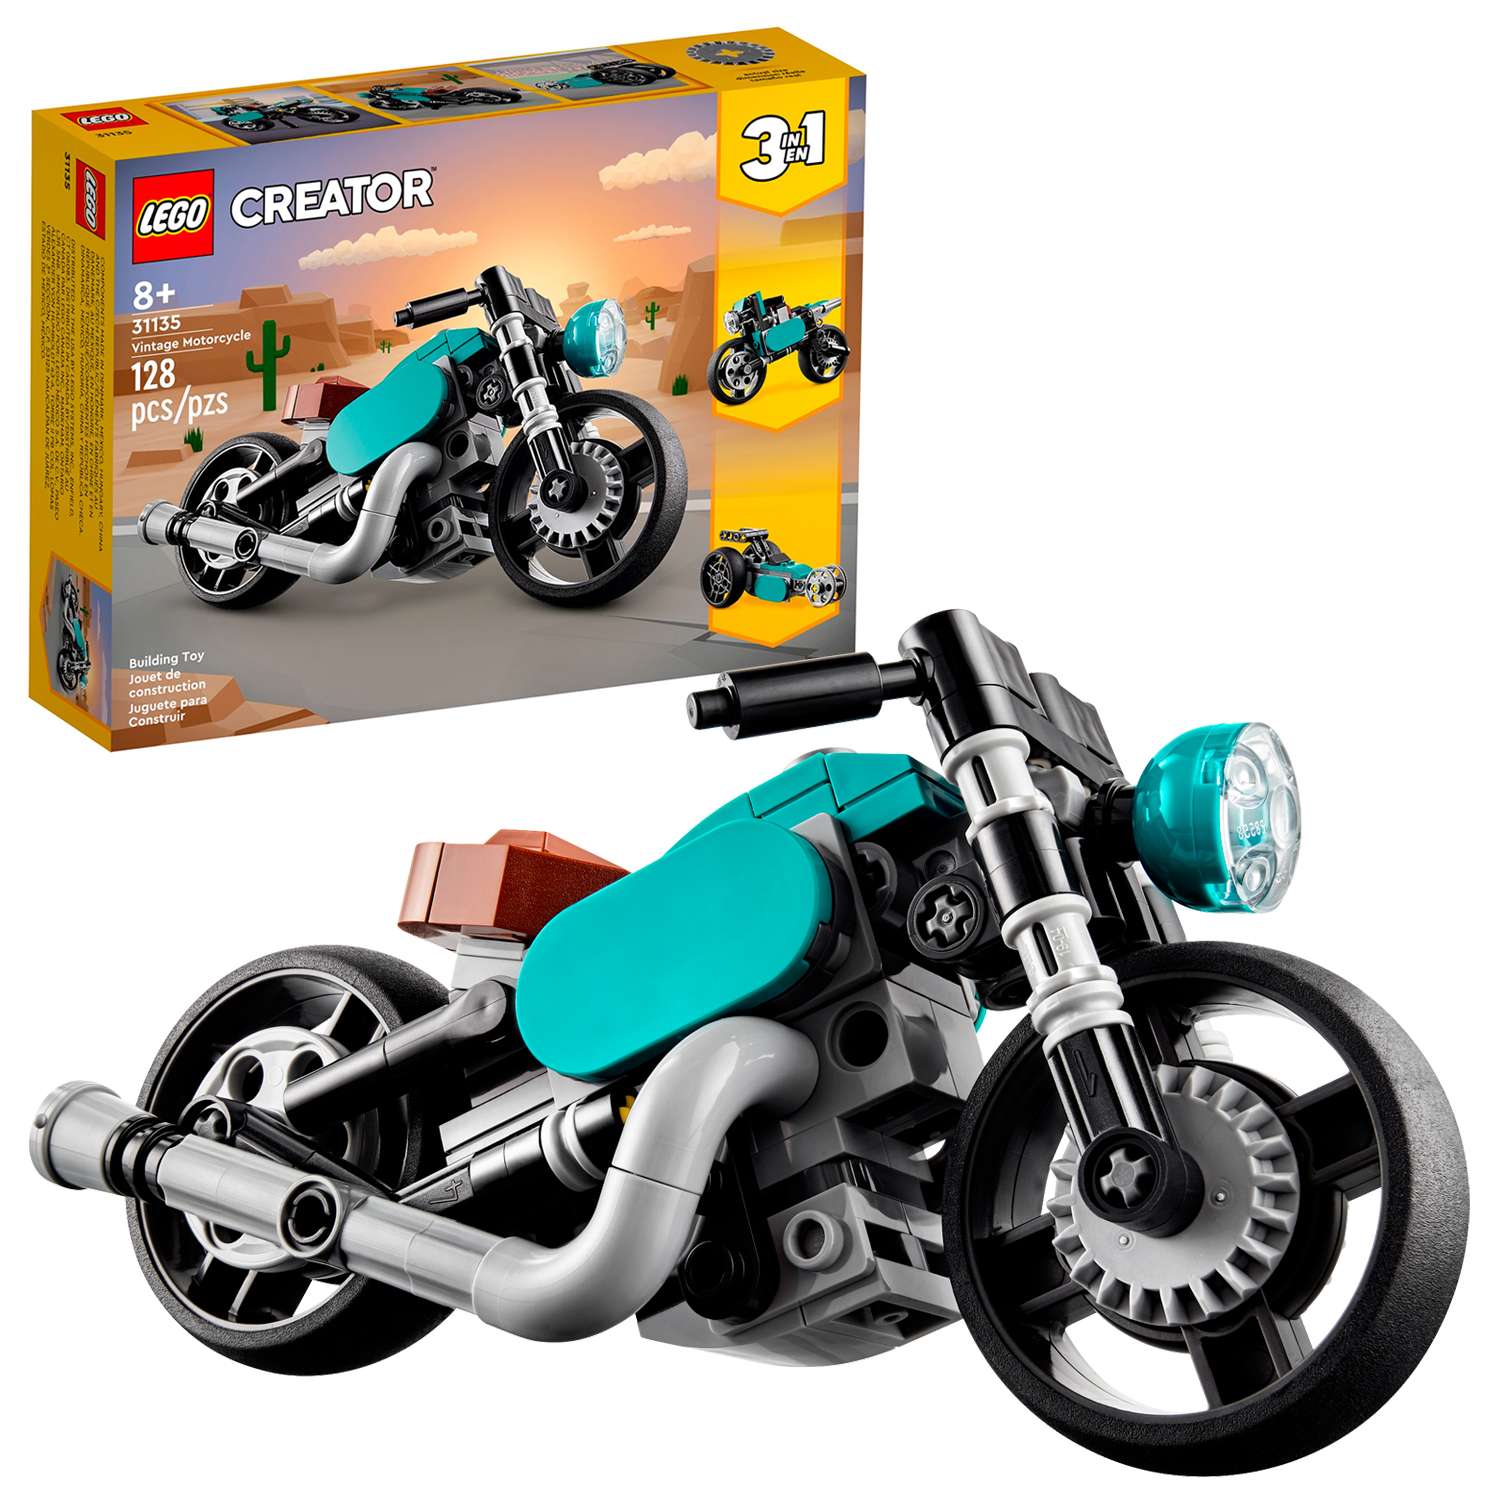 Конструктор детский LEGO Creator 3-in-1 Винтажный мотоцикл 31135 - фото 1